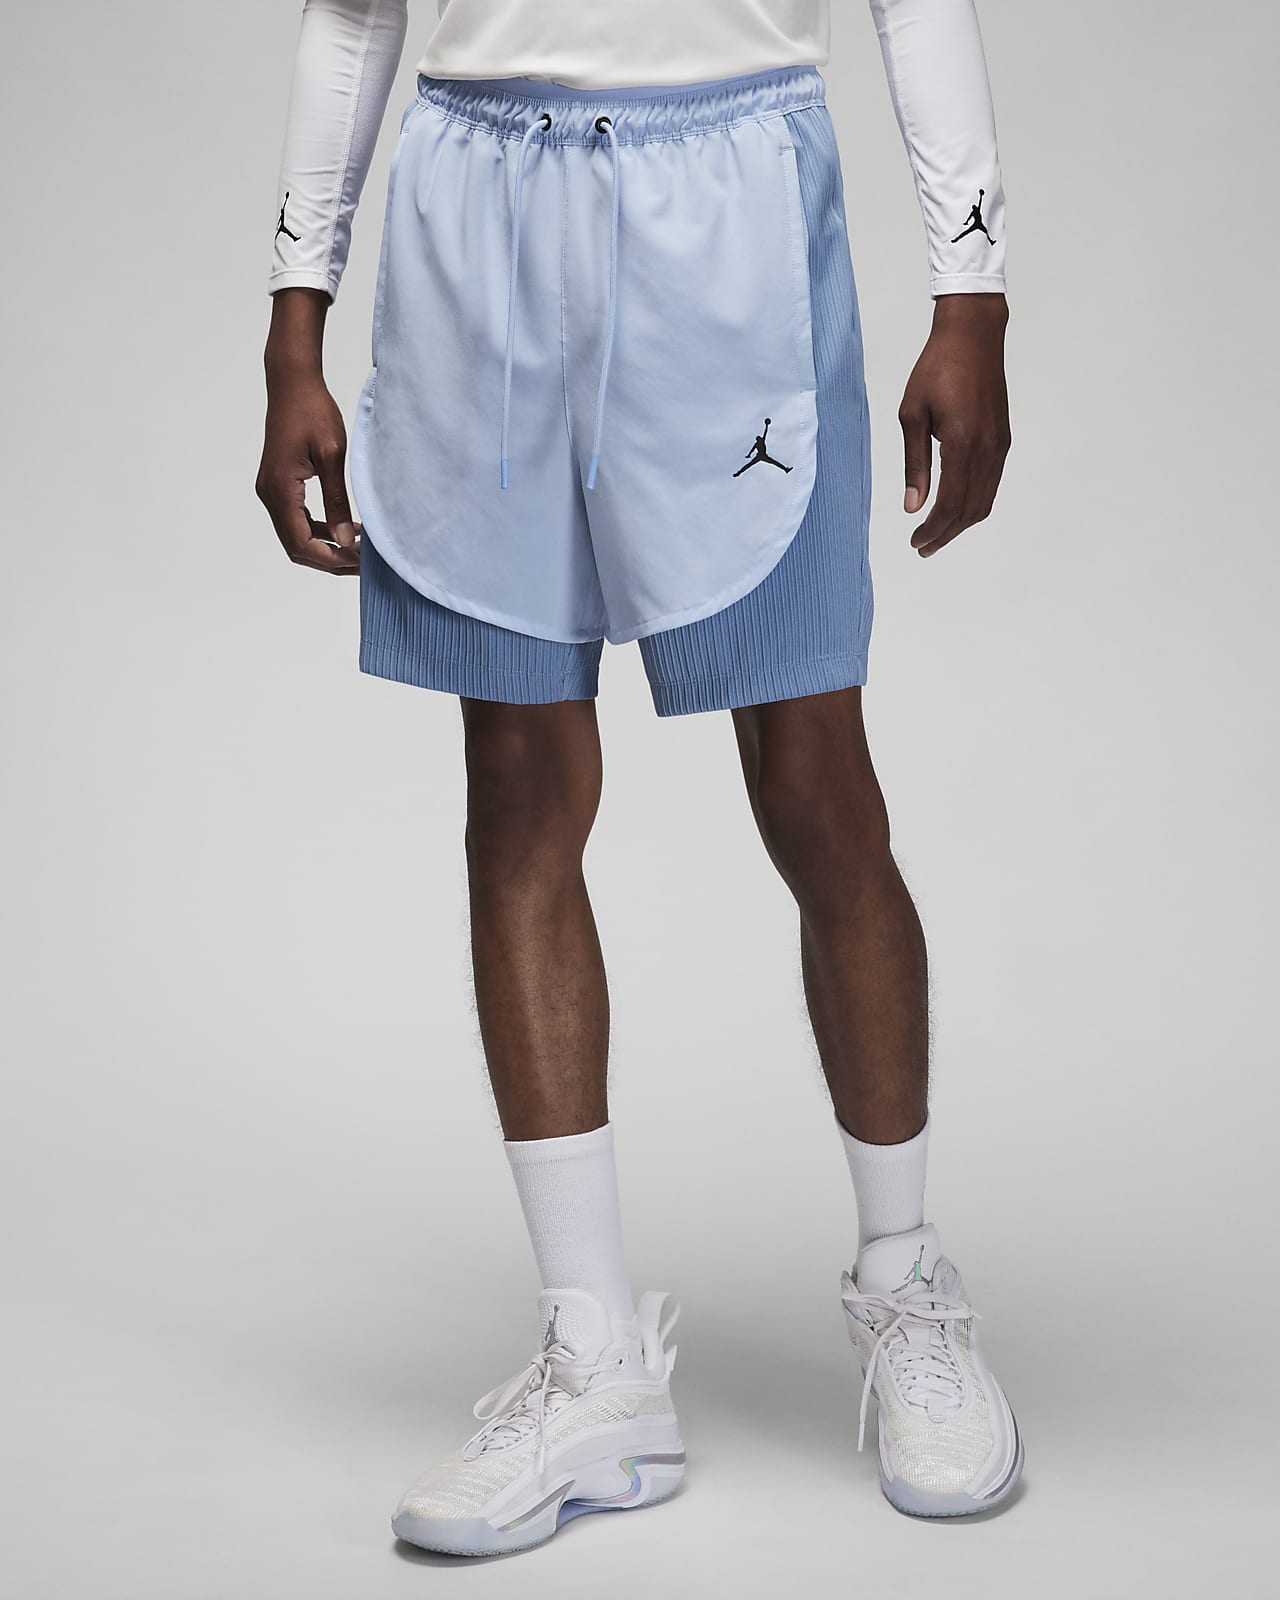 fictie Dertig ginder Jordan Dri-FIT Sport Men's Shorts. Nike.com